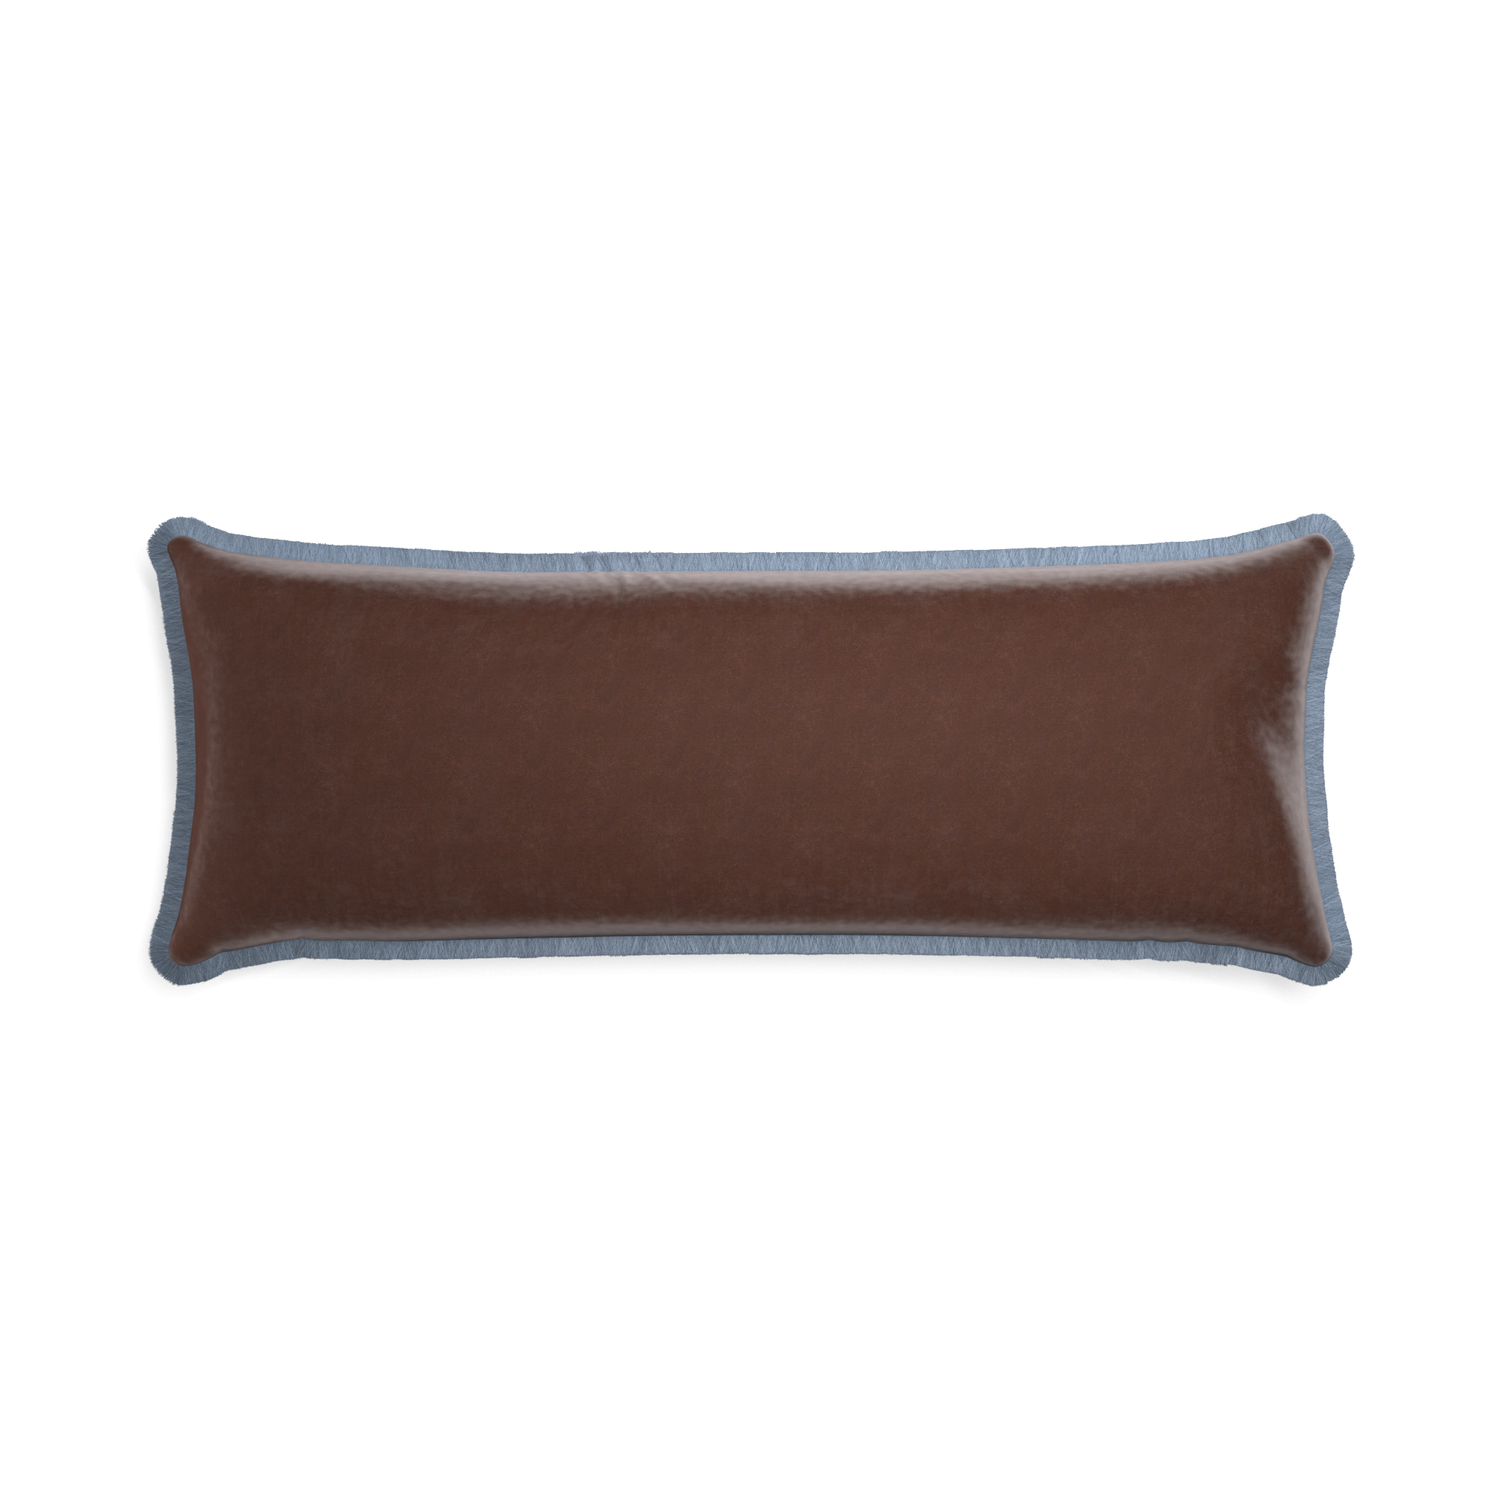 Xl-lumbar walnut velvet custom pillow with sky fringe on white background